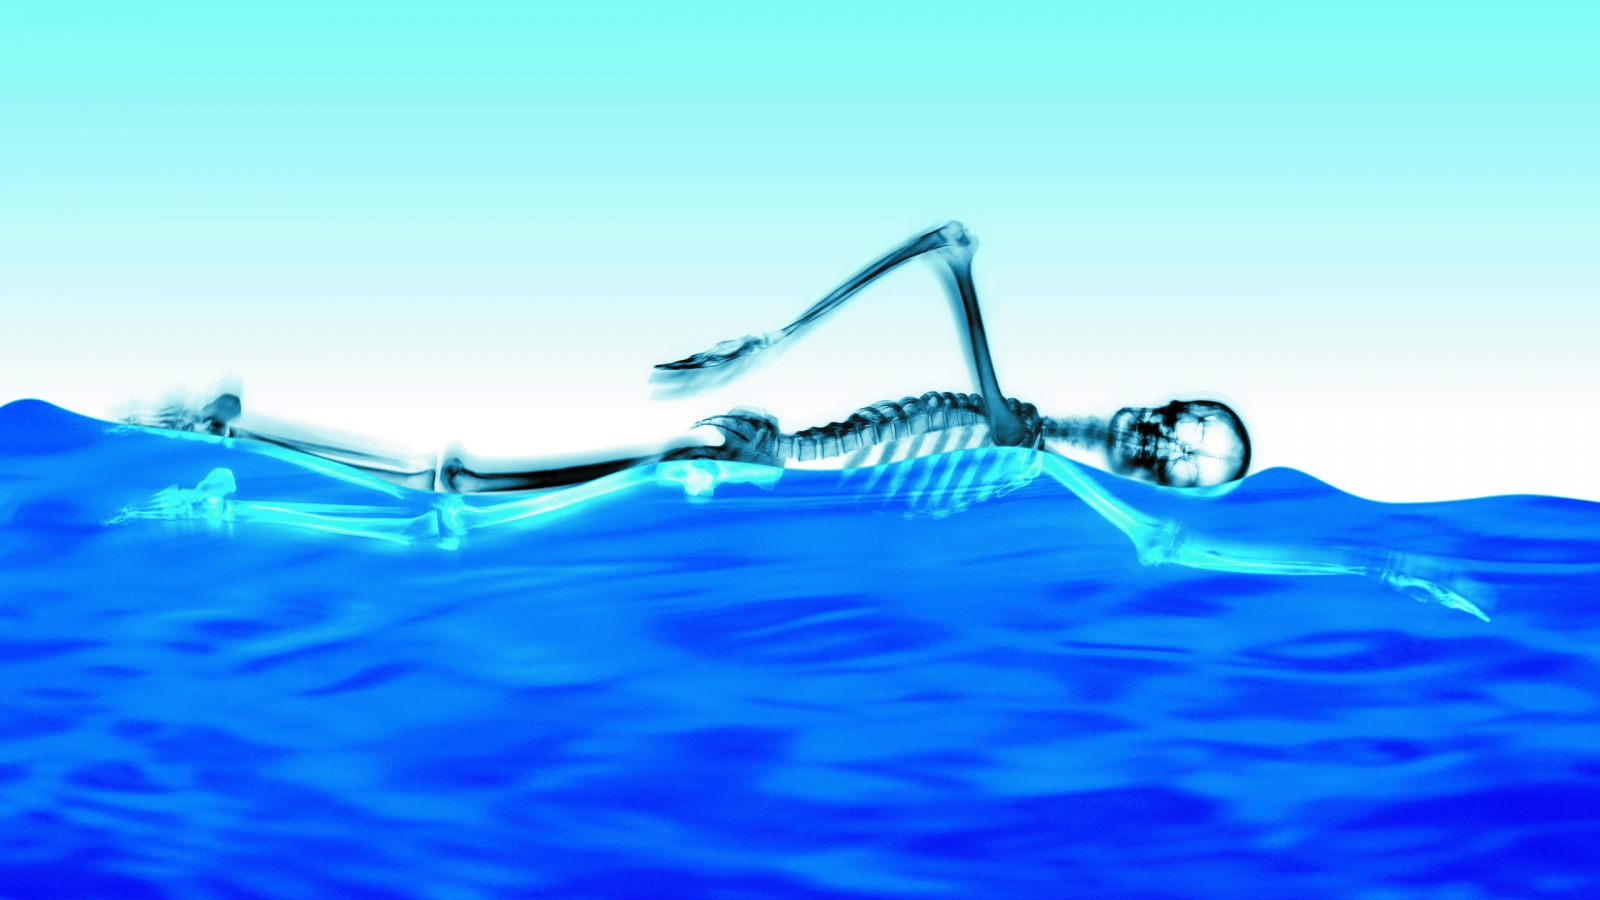 Swimming Skeleton for 1600 x 900 HDTV resolution